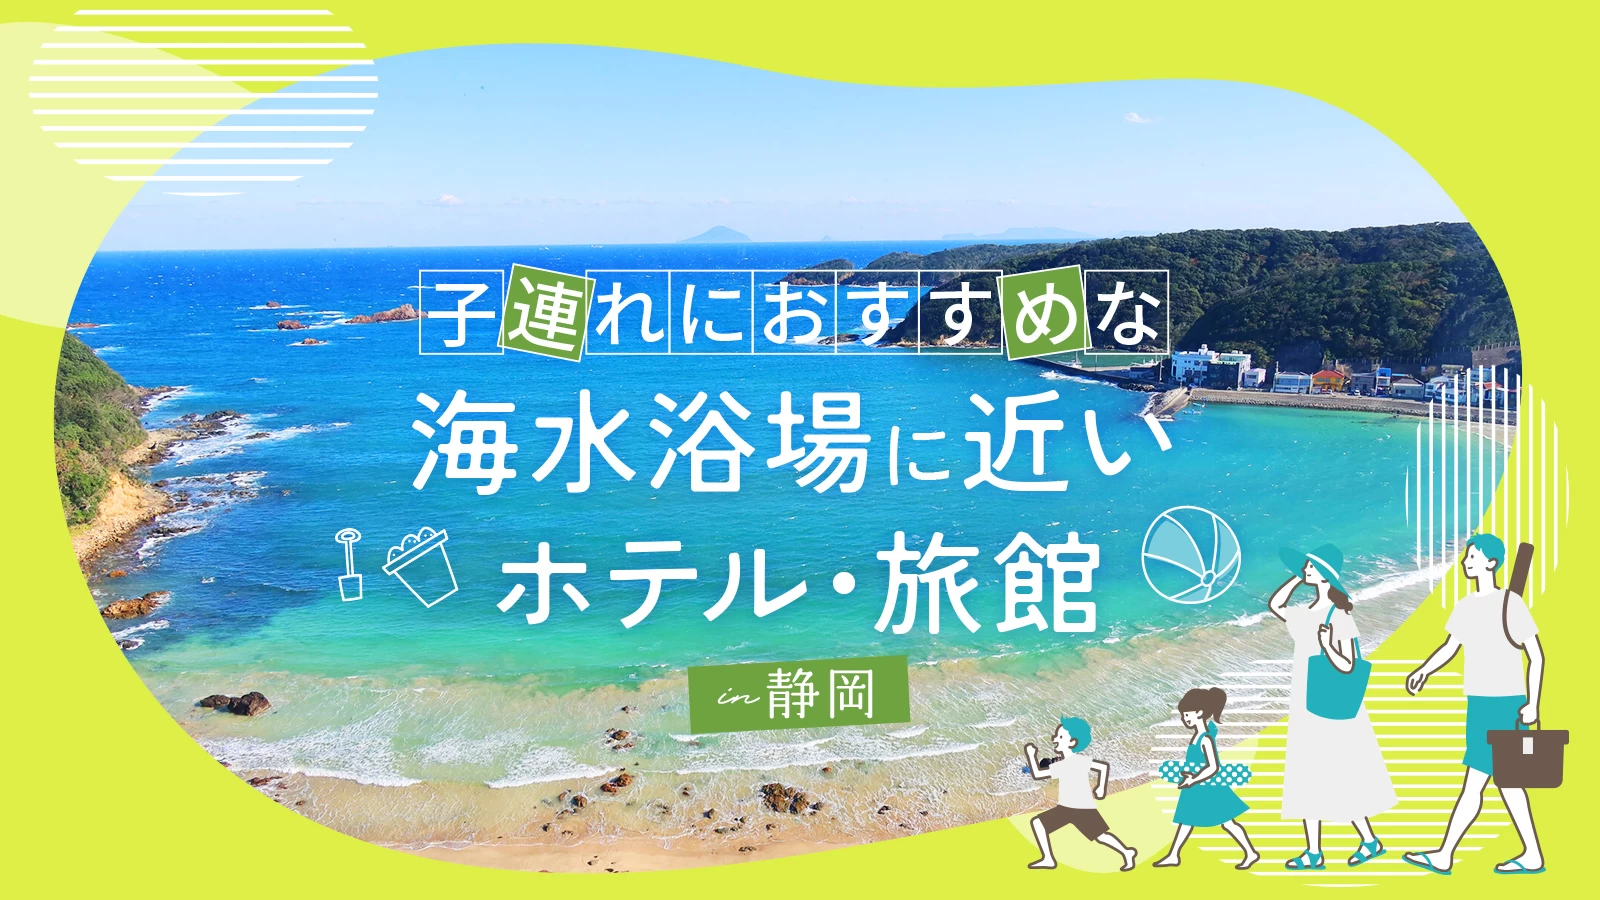 【静岡】子連れにおすすめな海水浴場に近いホテル・旅館5選